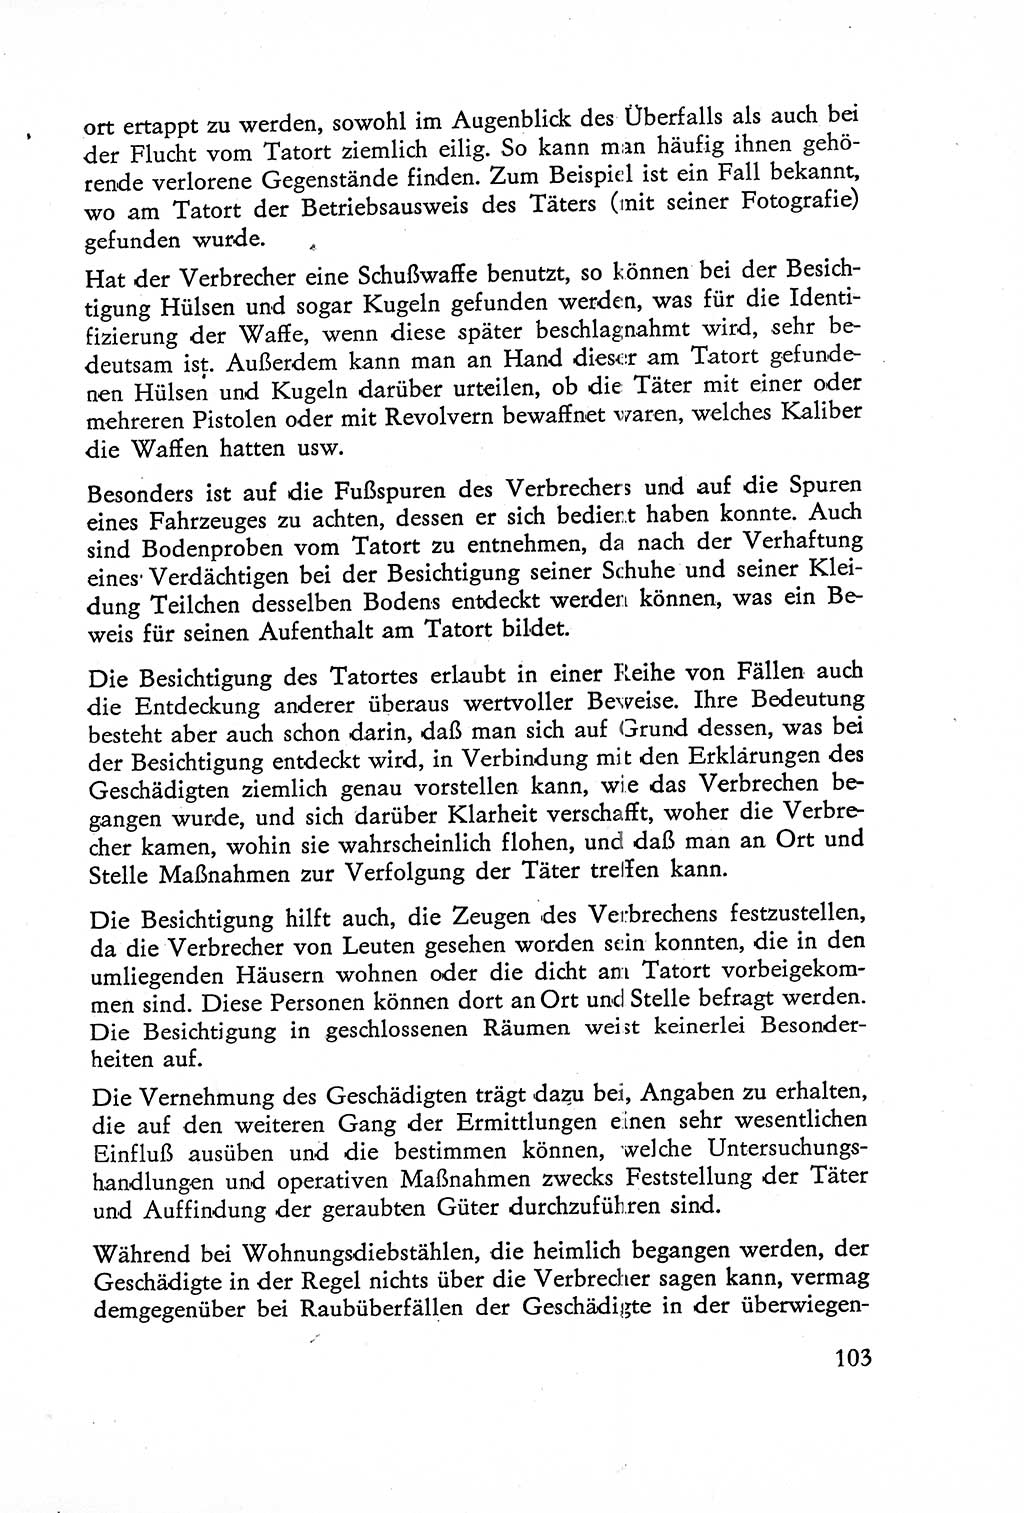 Die Untersuchung einzelner Verbrechensarten [Deutsche Demokratische Republik (DDR)] 1960, Seite 103 (Unters. Verbr.-Art. DDR 1960, S. 103)